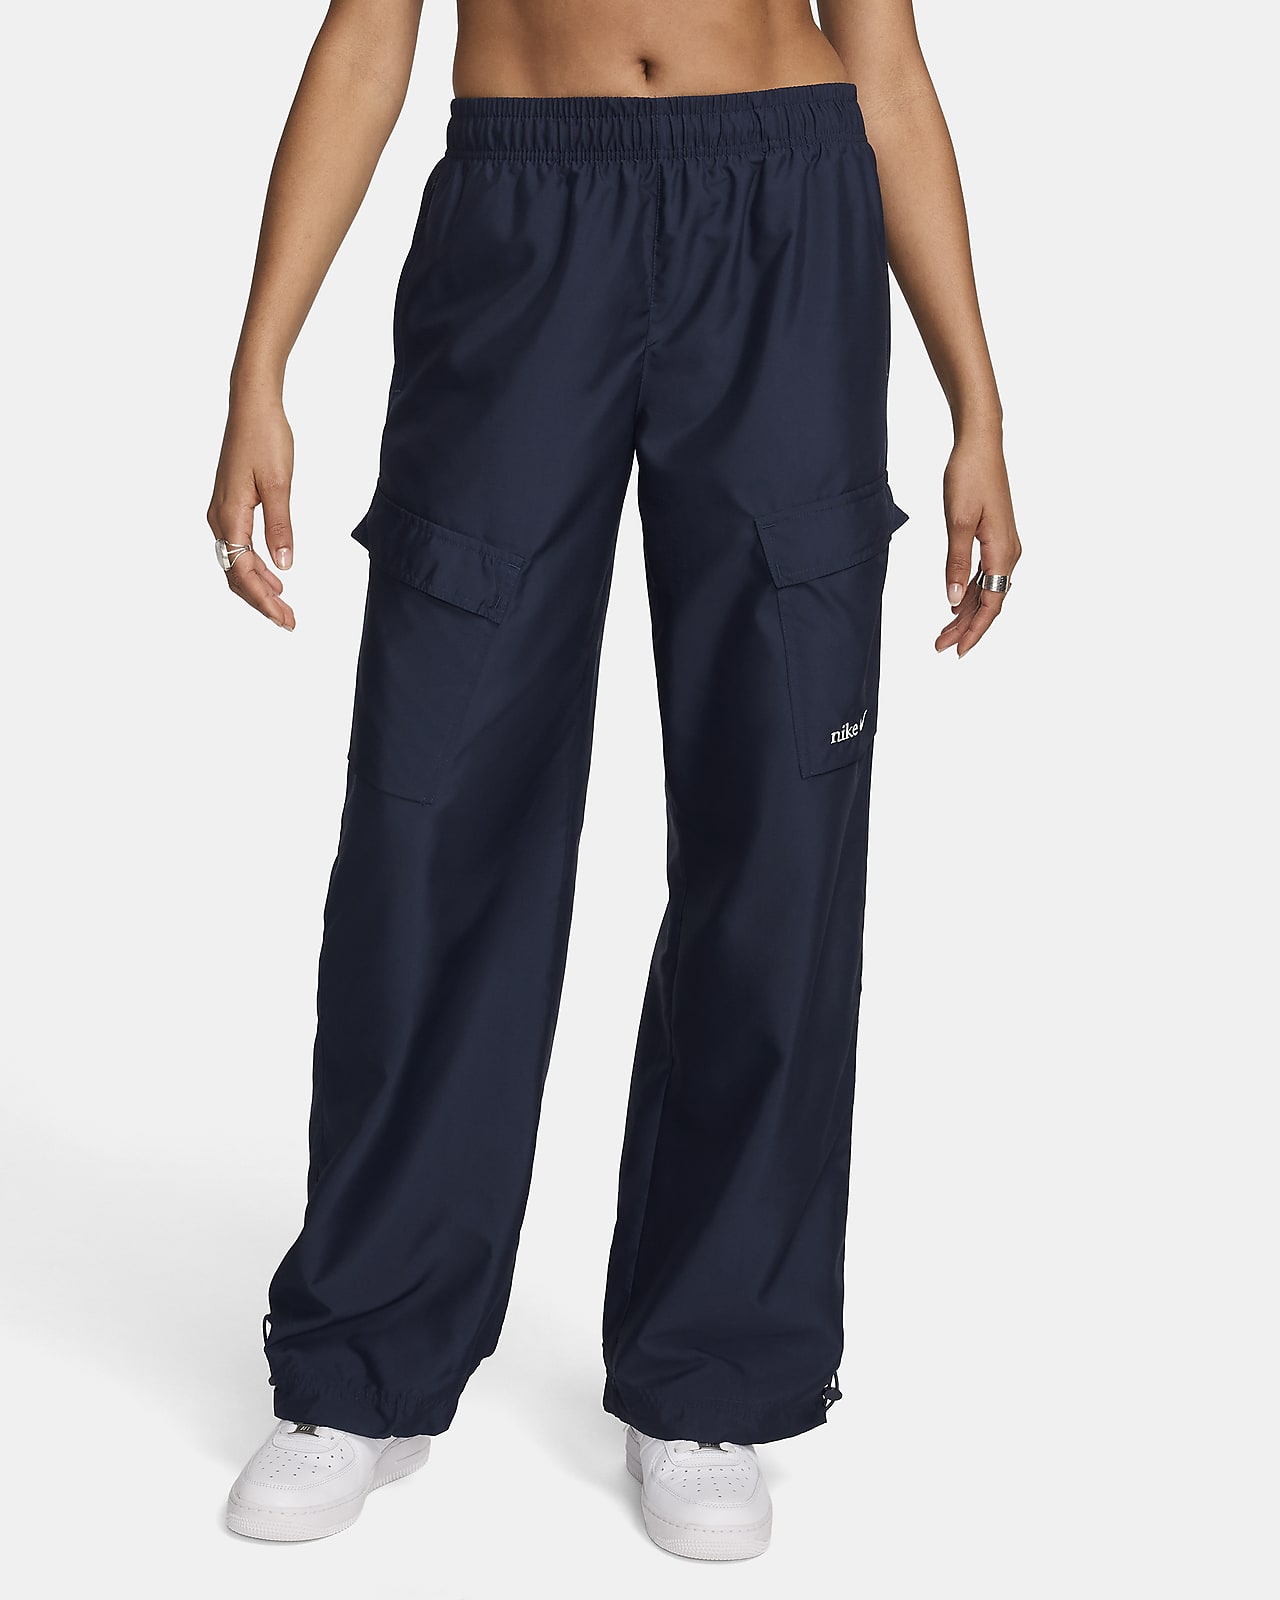 Pantaloni cargo woven Nike Sportswear - Donna